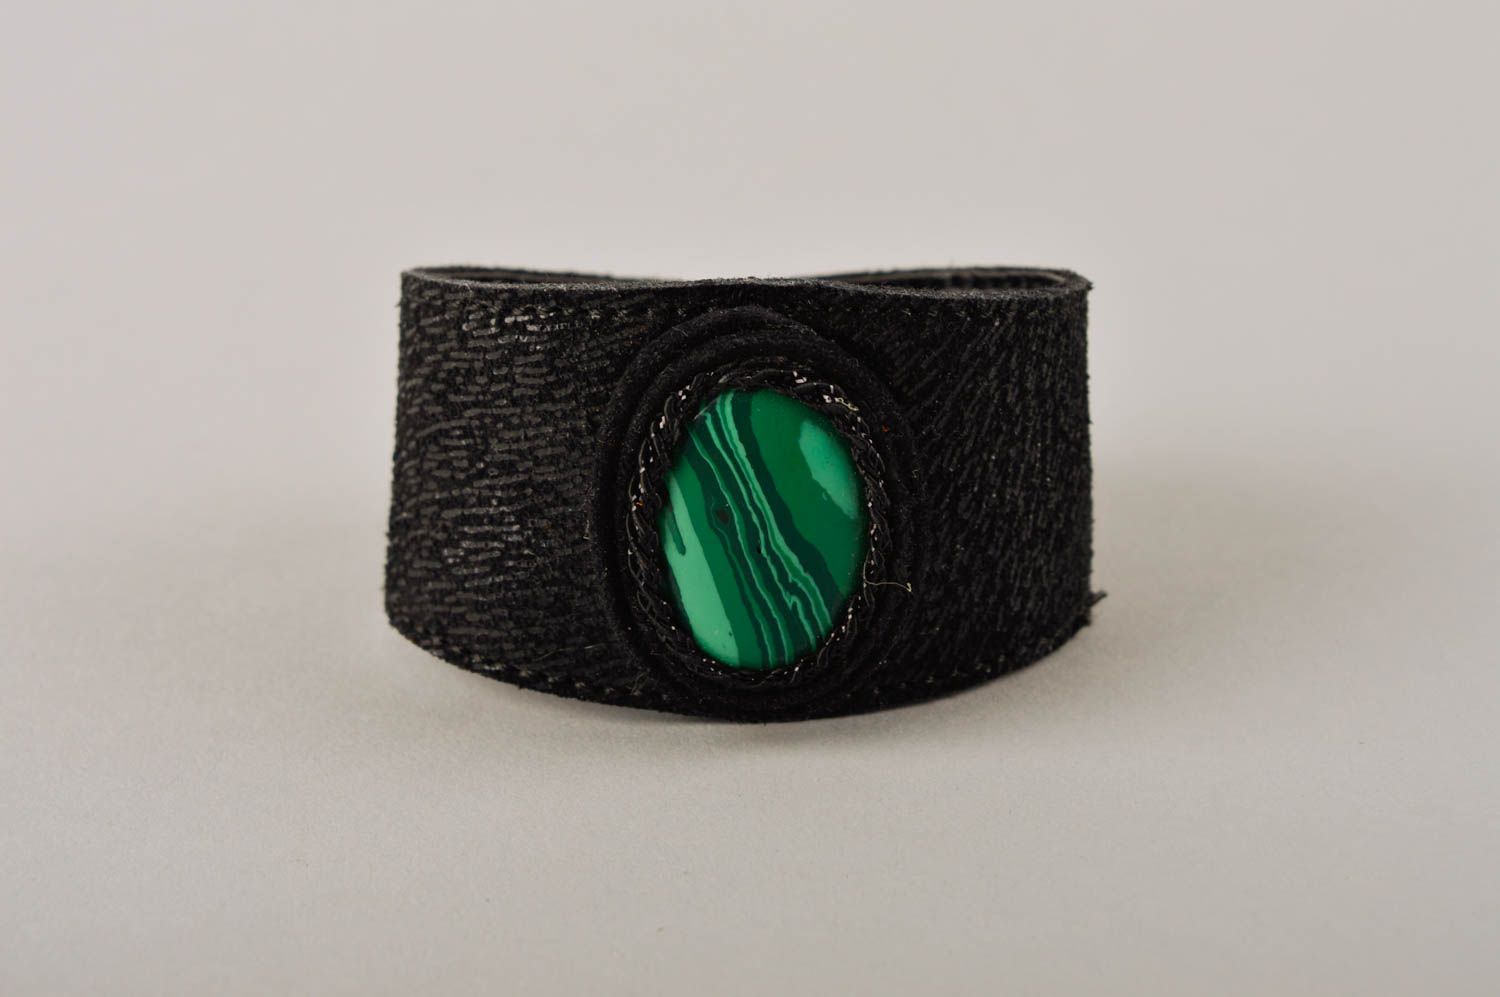 Stylish handmade leather bracelet wrist bracelet designs fashion tips gift ideas photo 3